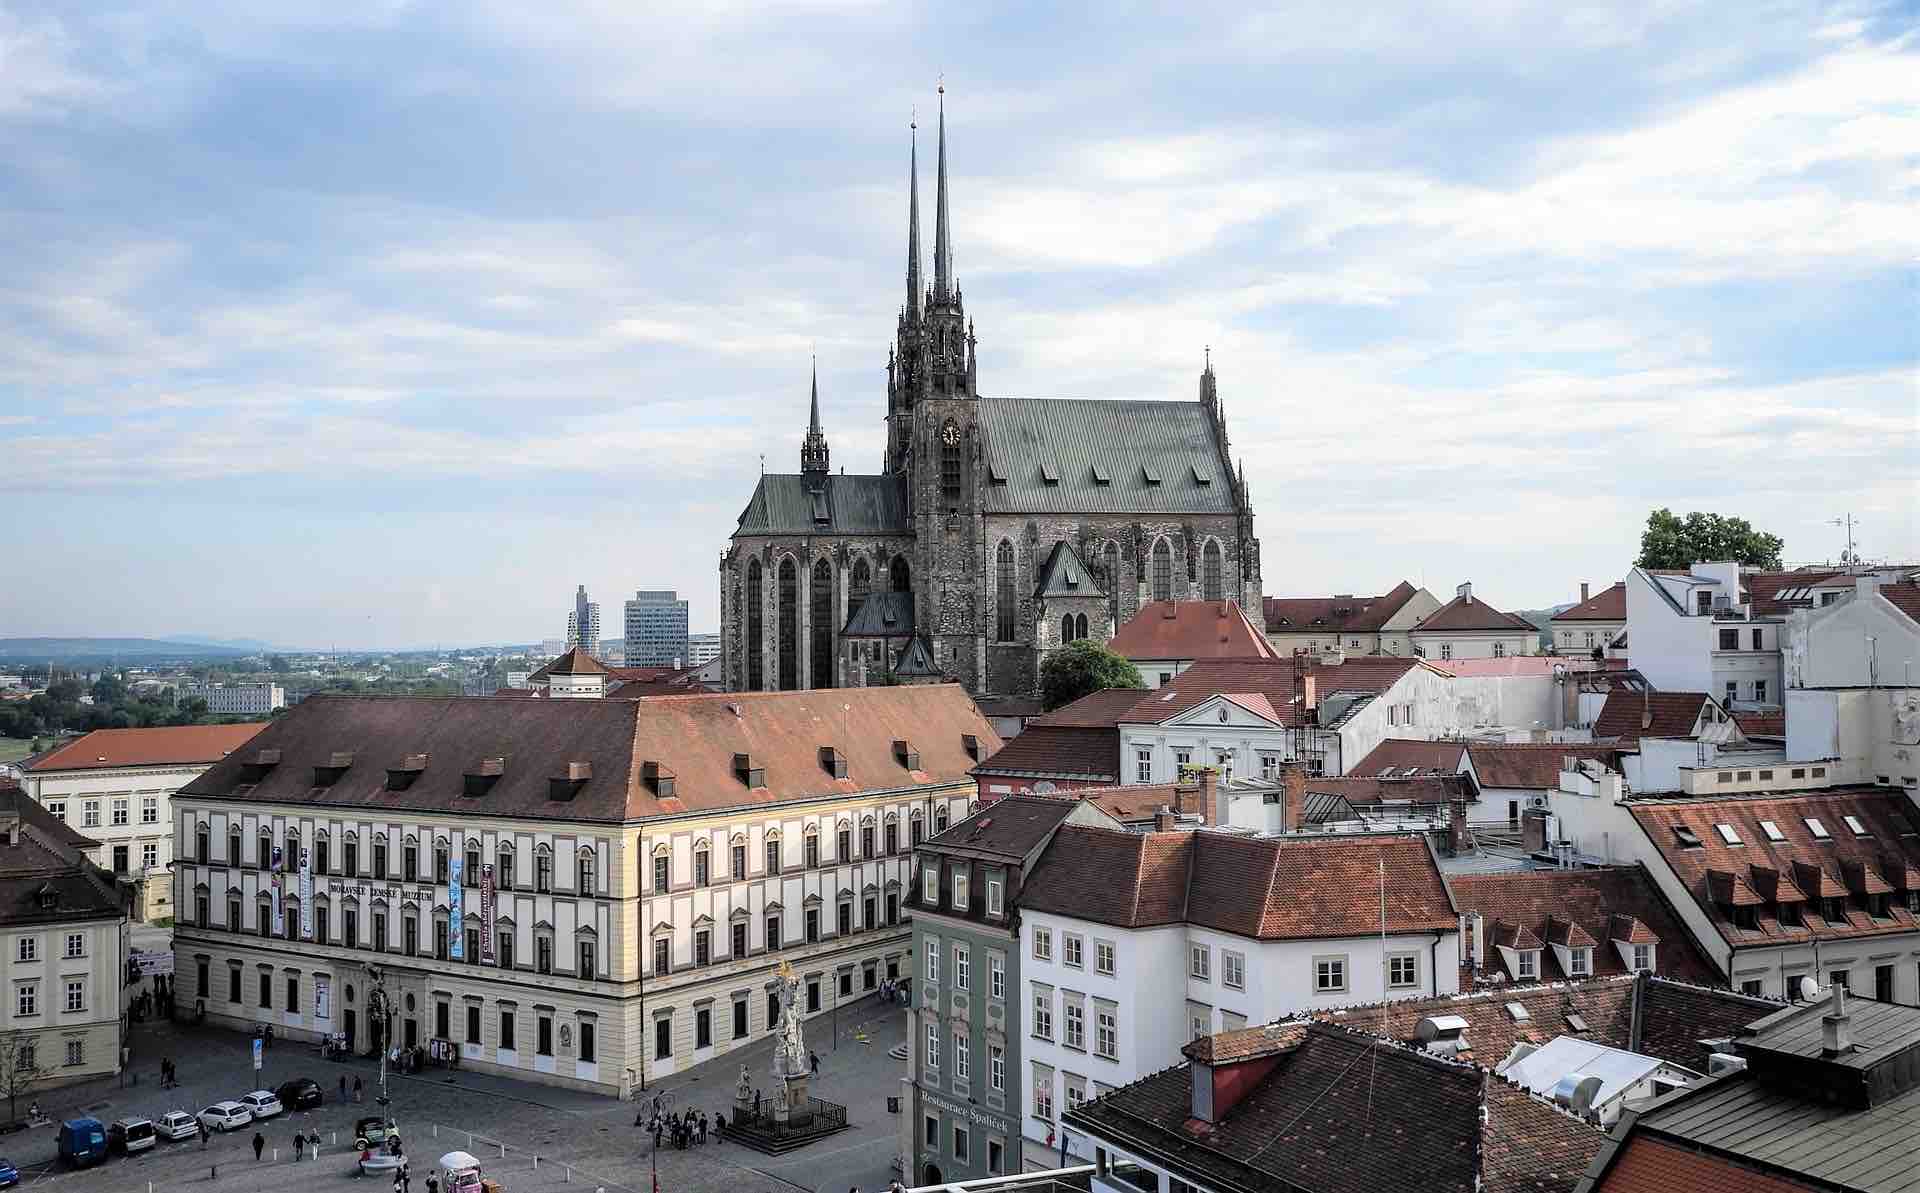 З кожним роком у Брно з'являється все більше цікавих кафе та ресторанчиків, тож у гастрономічному плані моравська столиця частково конкурує з Прагою. Джерело фото: Shutterstock.